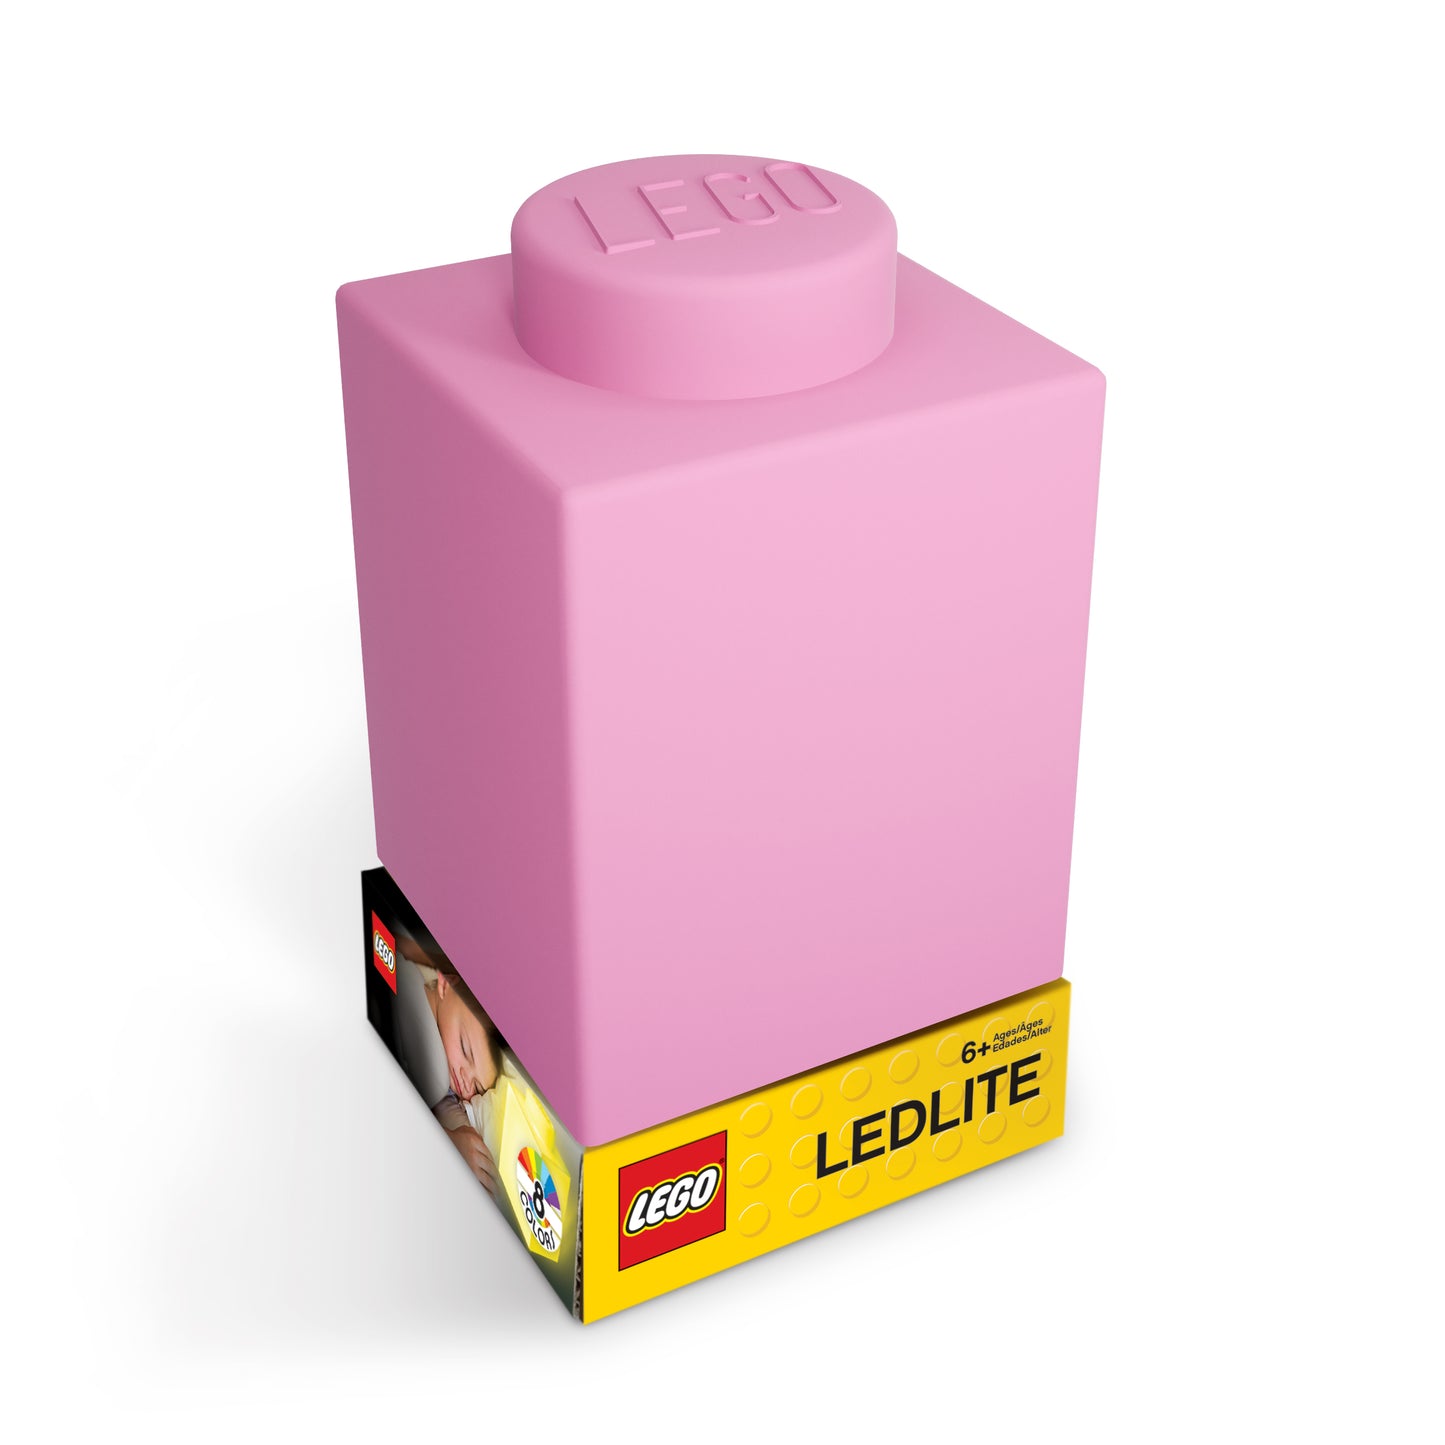 IQ レゴ アイコニック 1×1のレゴブロック形 柔らかシリコン タッチ式 ランプ ピンク (LP39)